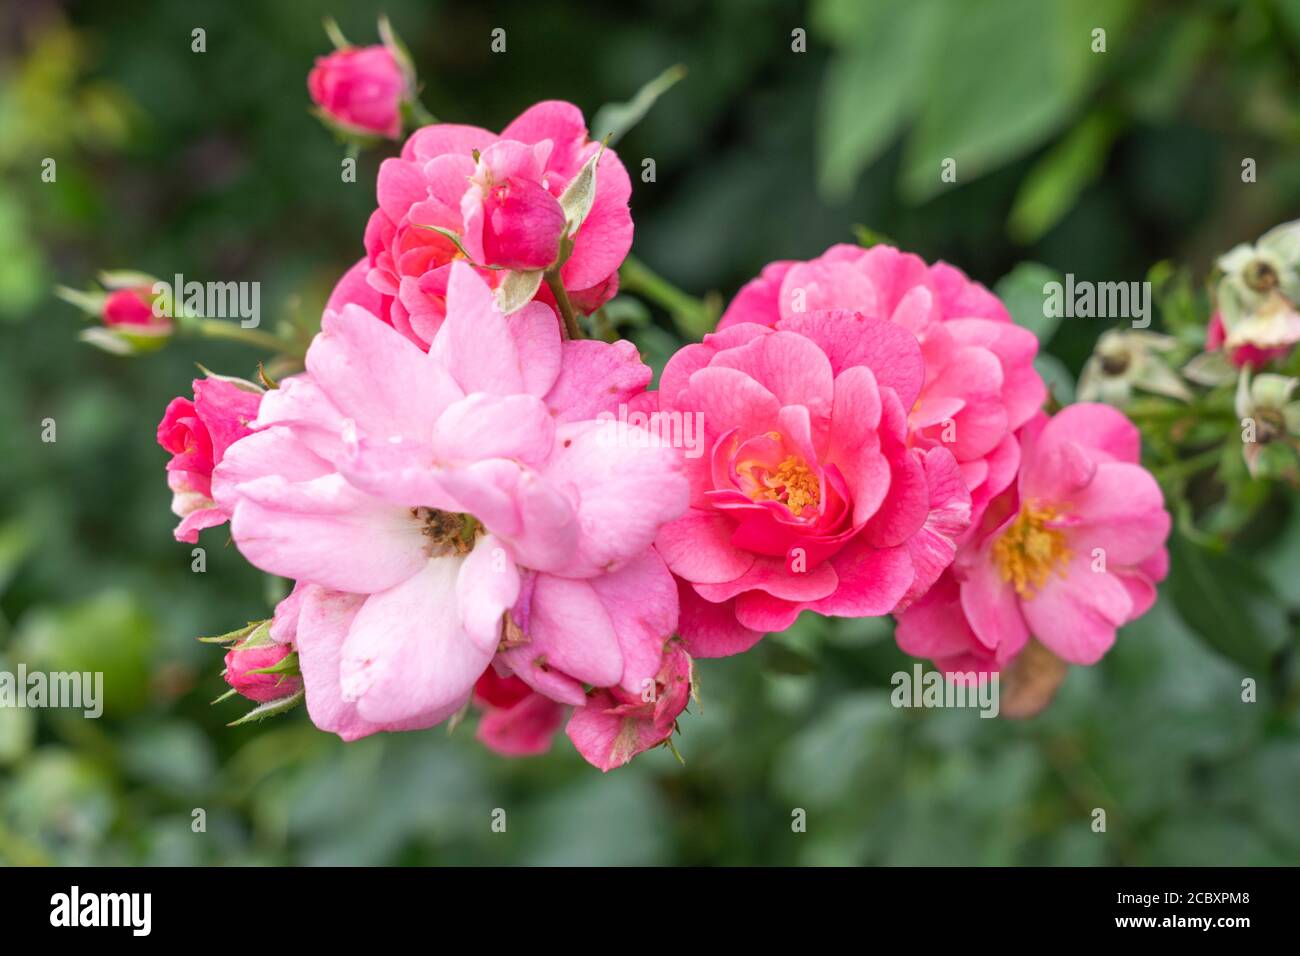 Rosa Gallica Conditorum - Old Rose 'Conditorum' un hybride de Gallica avec des pétales roses intenses et des étamines jaunes d'or. Août, Basse-Autriche, Europe Banque D'Images